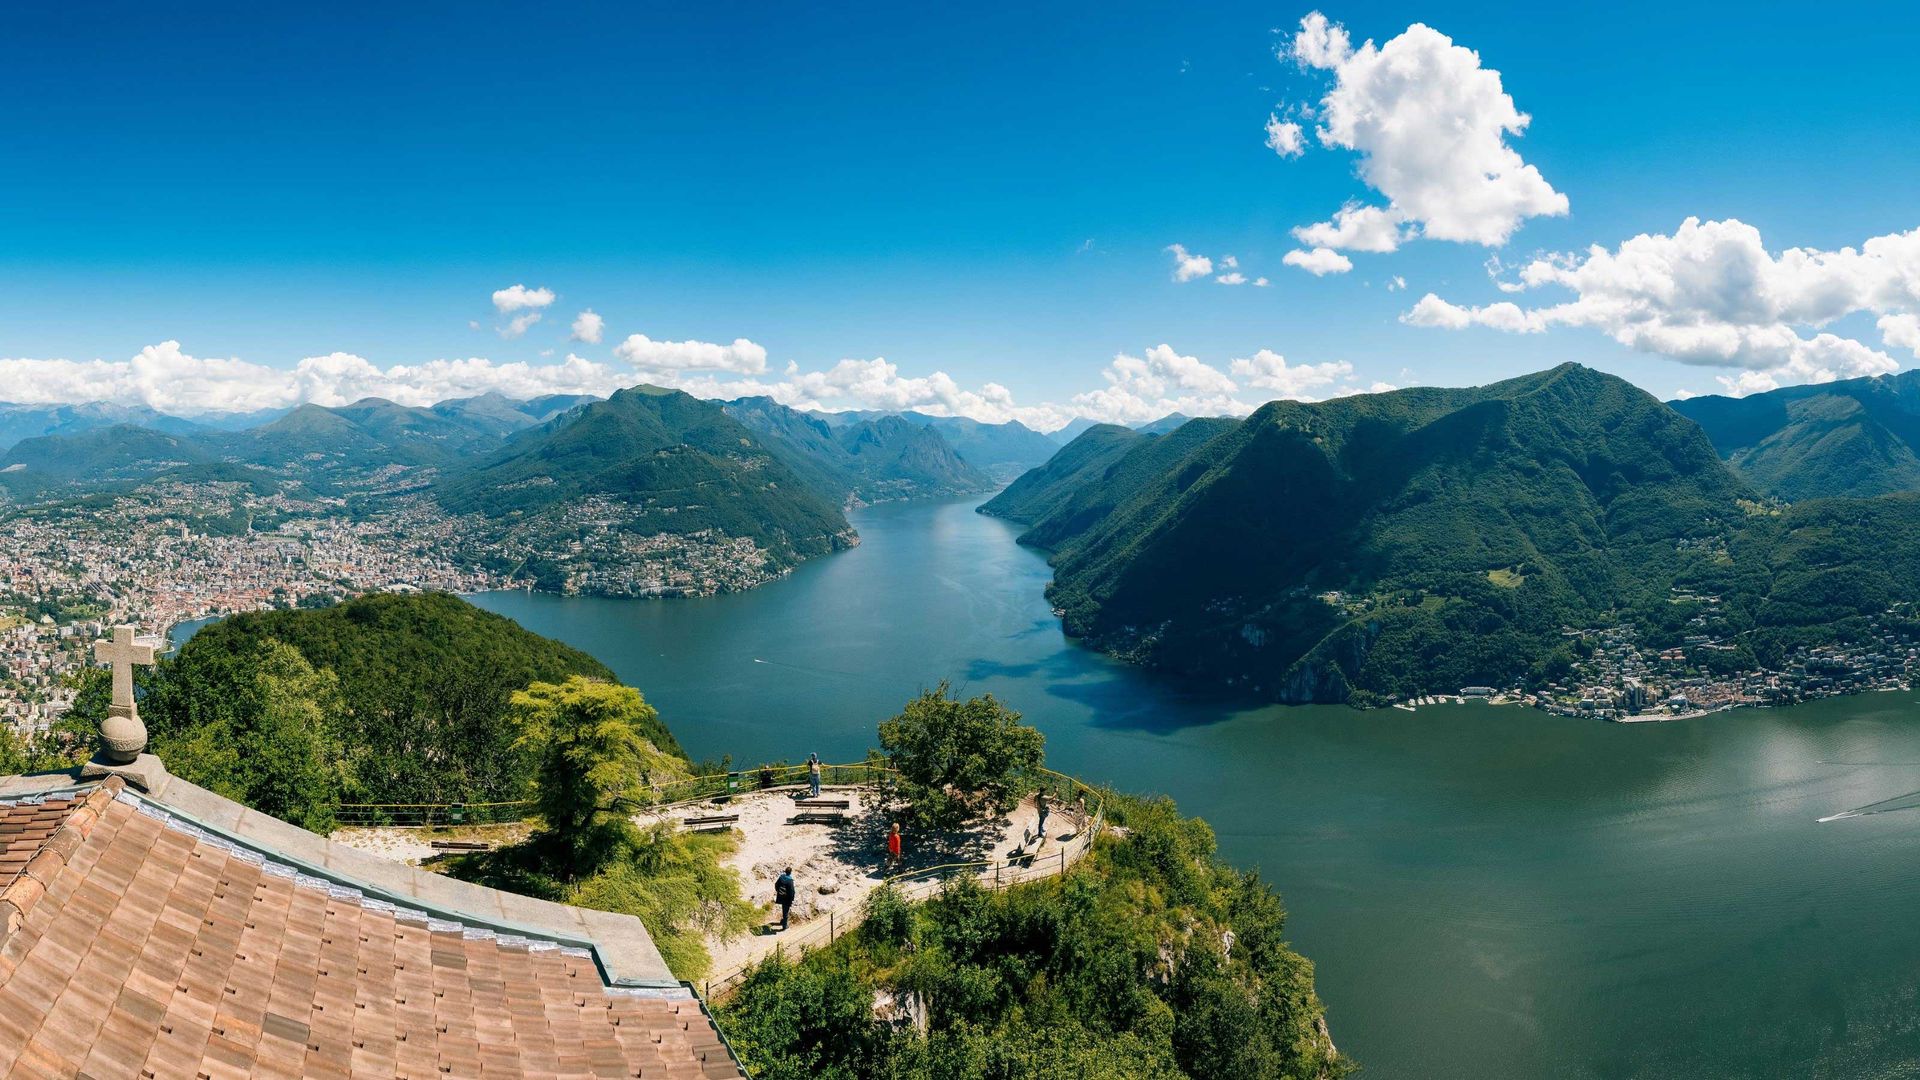 Vista panoramica del Lago di Lugano circondato dalle montagne con i visitatori che si godono il paesaggio da un punto di osservazione elevato.